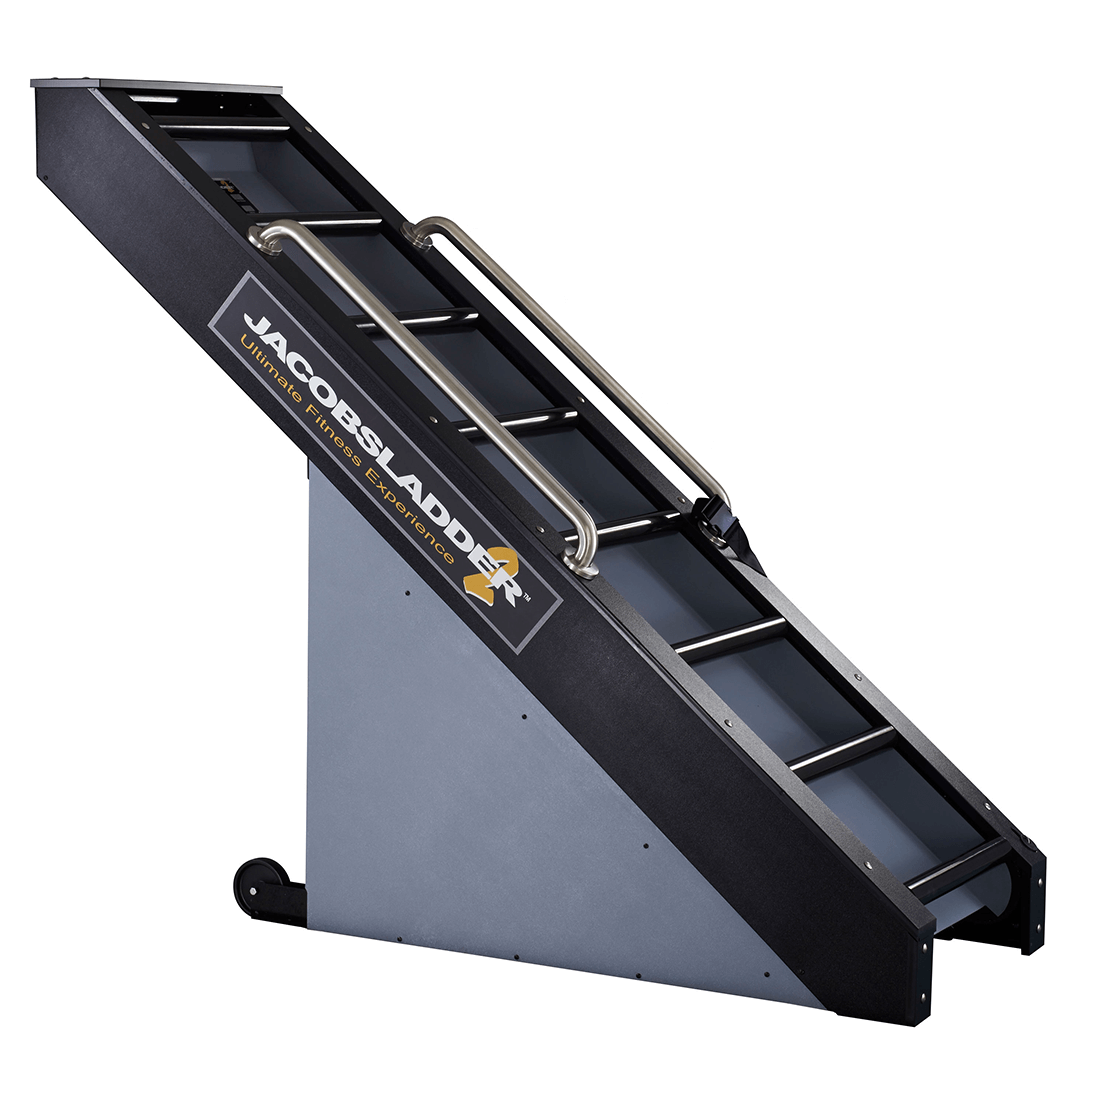 Brug Jacobs Ladder 2 Klatremaskine til en forbedret oplevelse